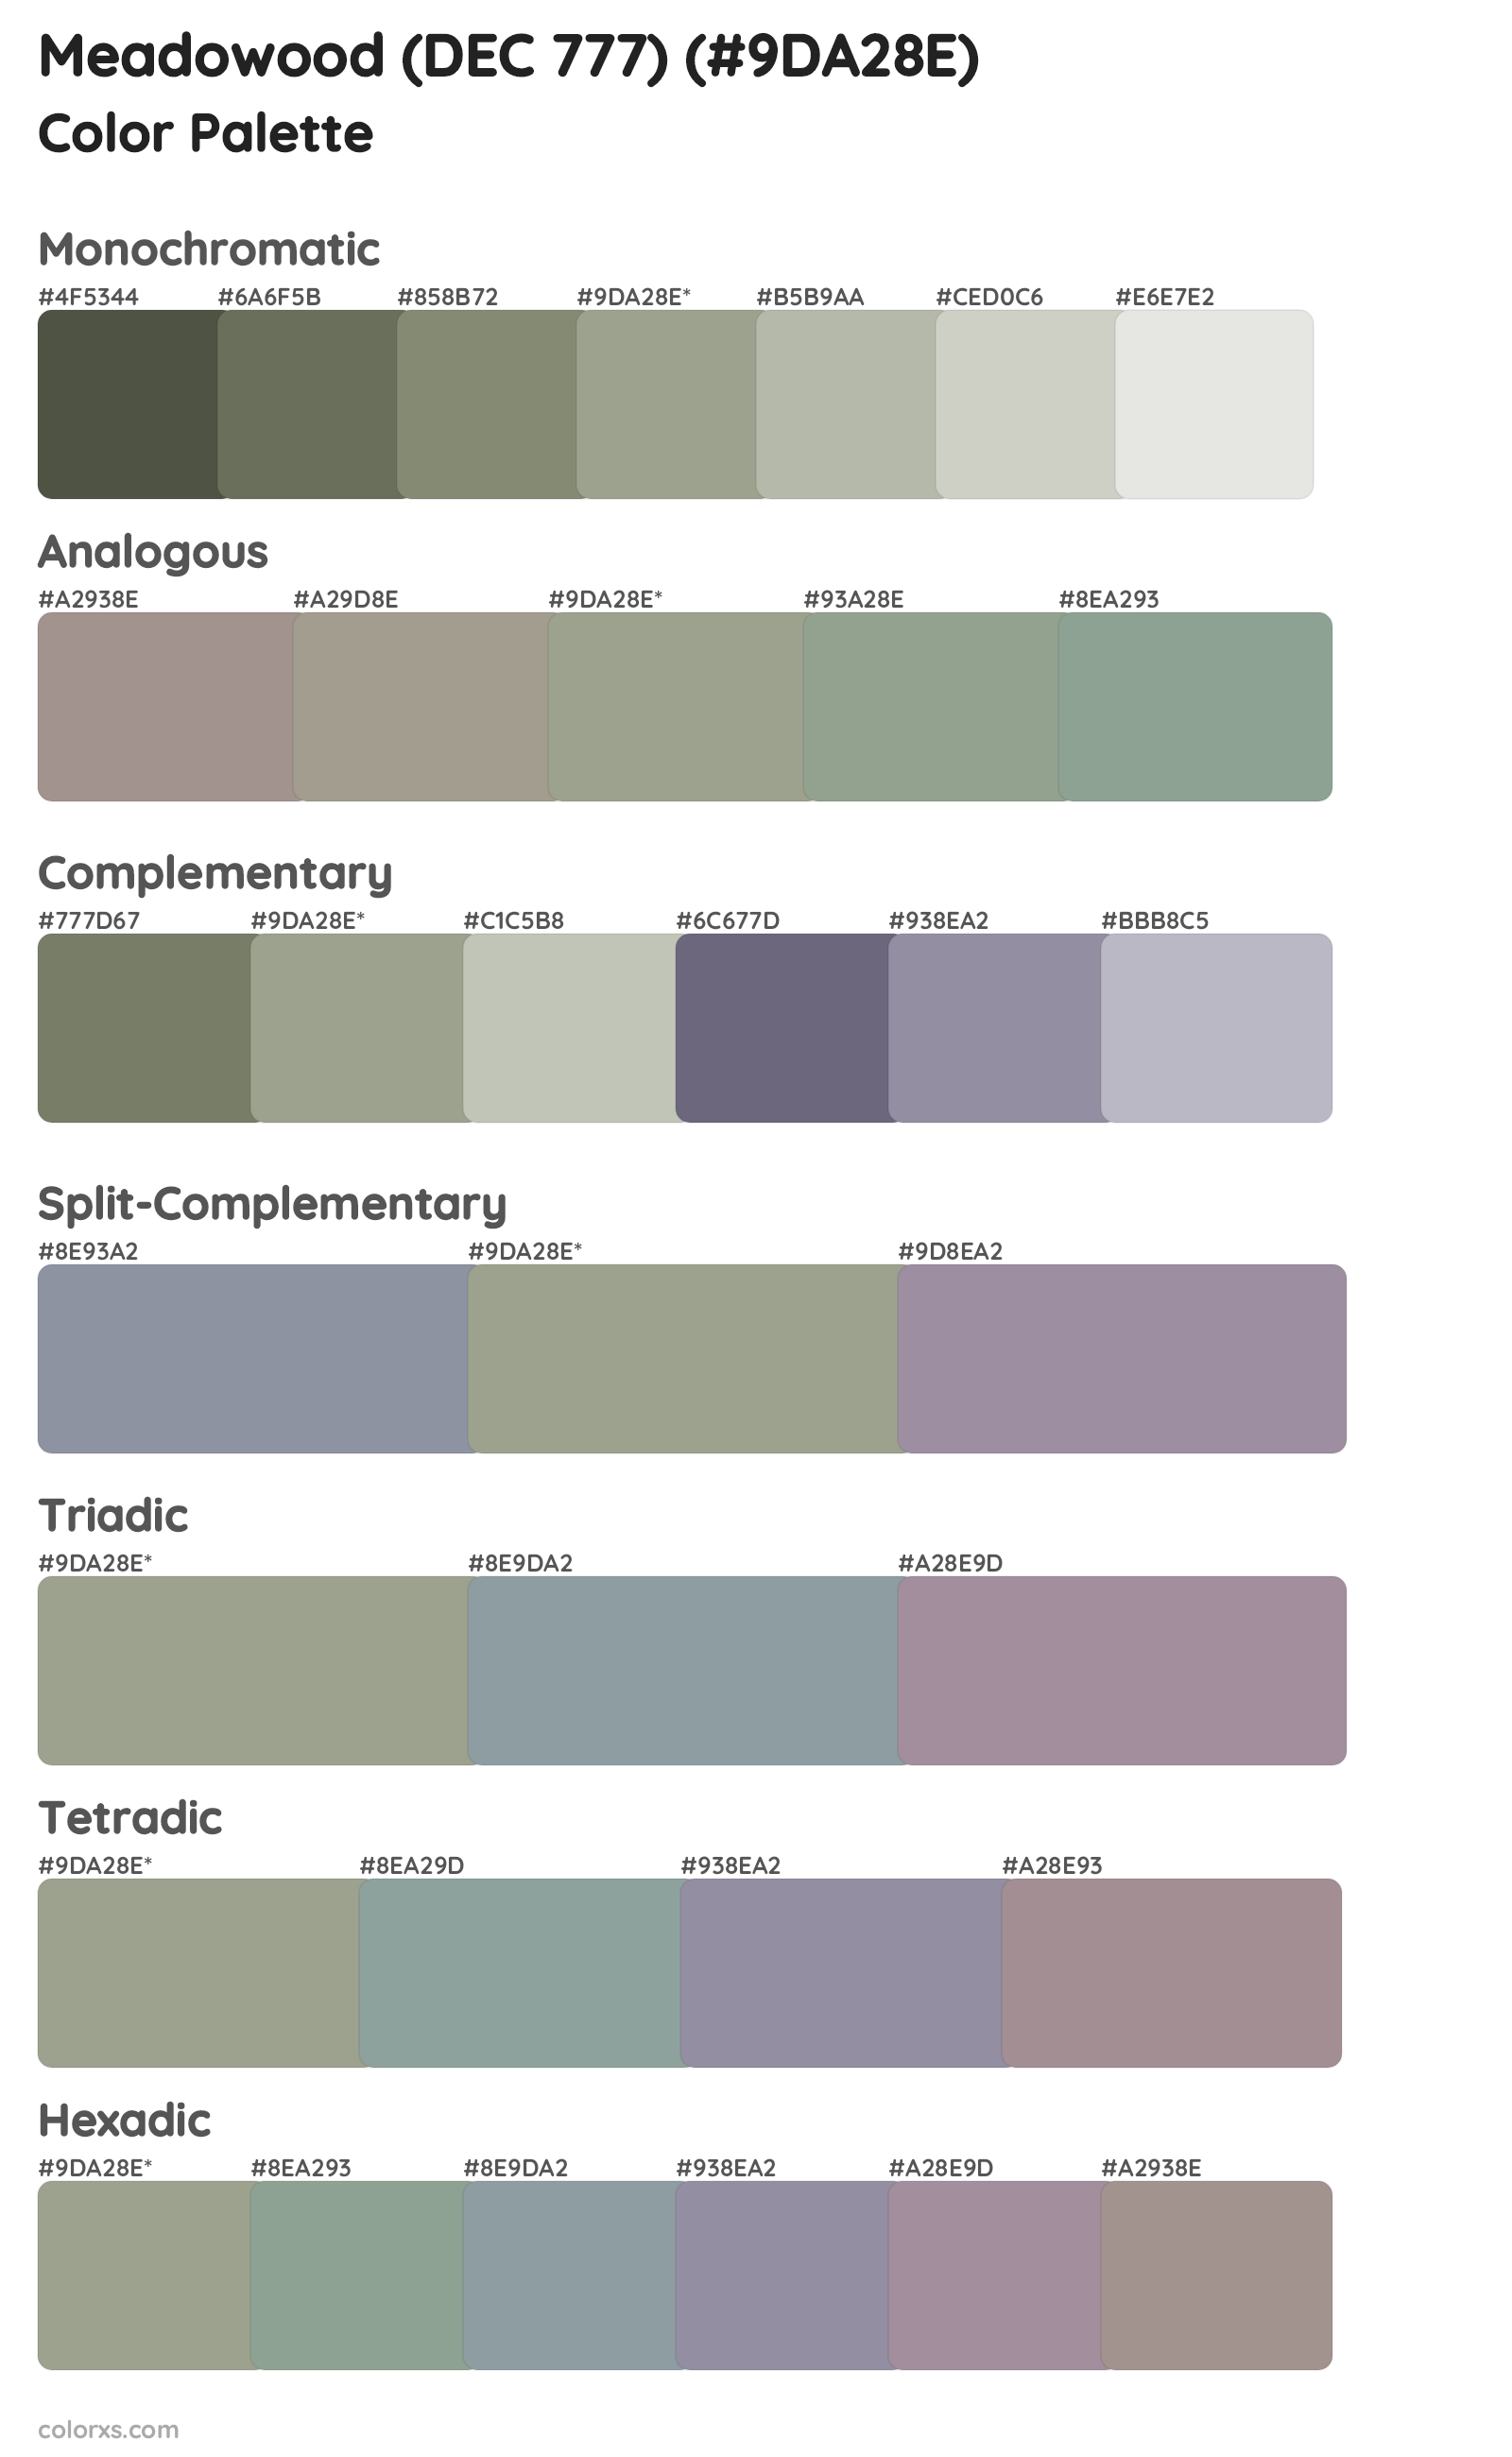 Meadowood (DEC 777) Color Scheme Palettes